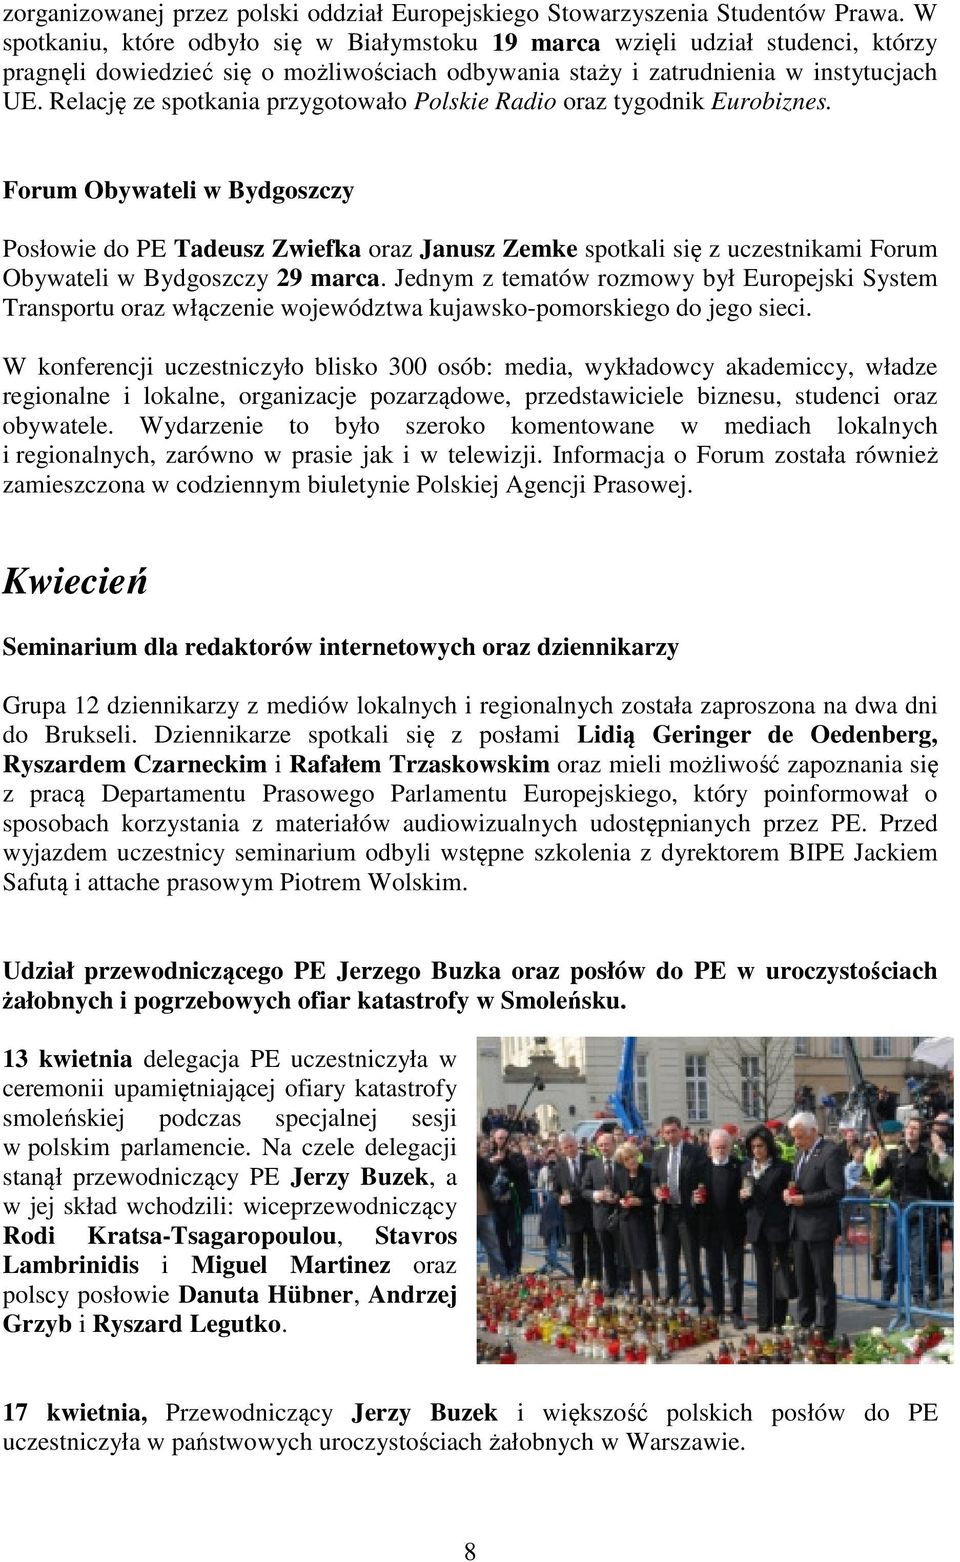 Relację ze spotkania przygotowało Polskie Radio oraz tygodnik Eurobiznes.